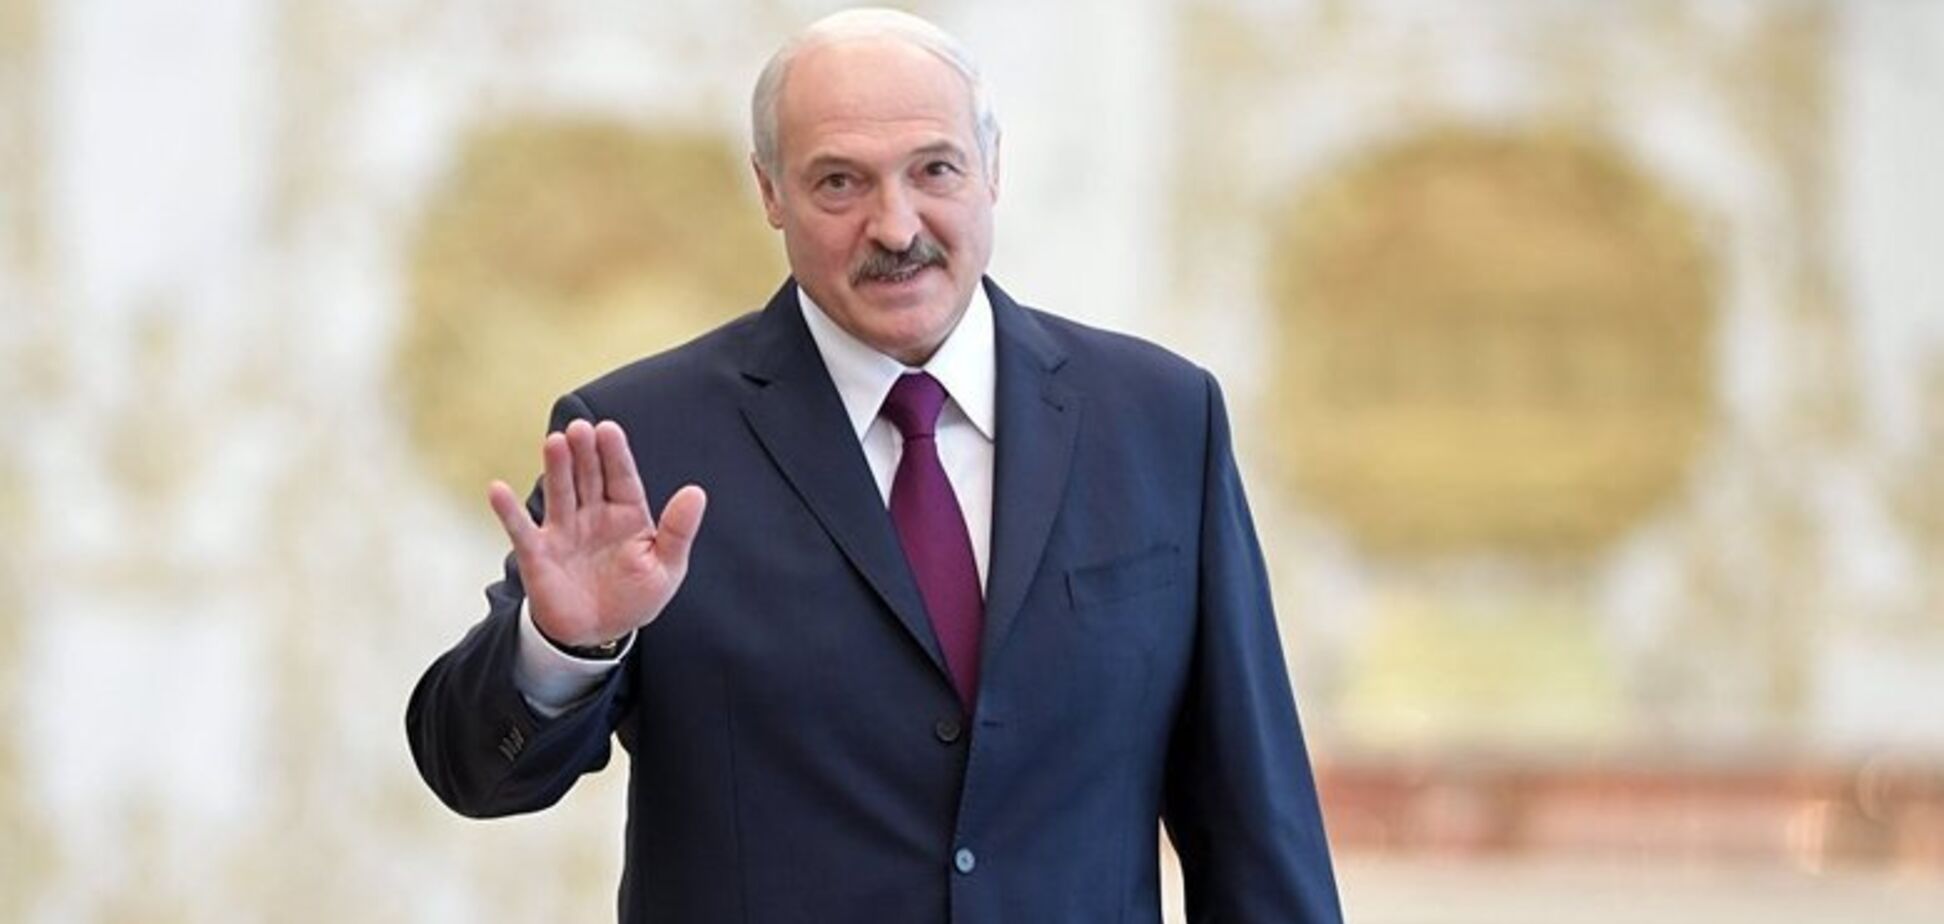 Румынский сценарий для Лукашенко уже запущен